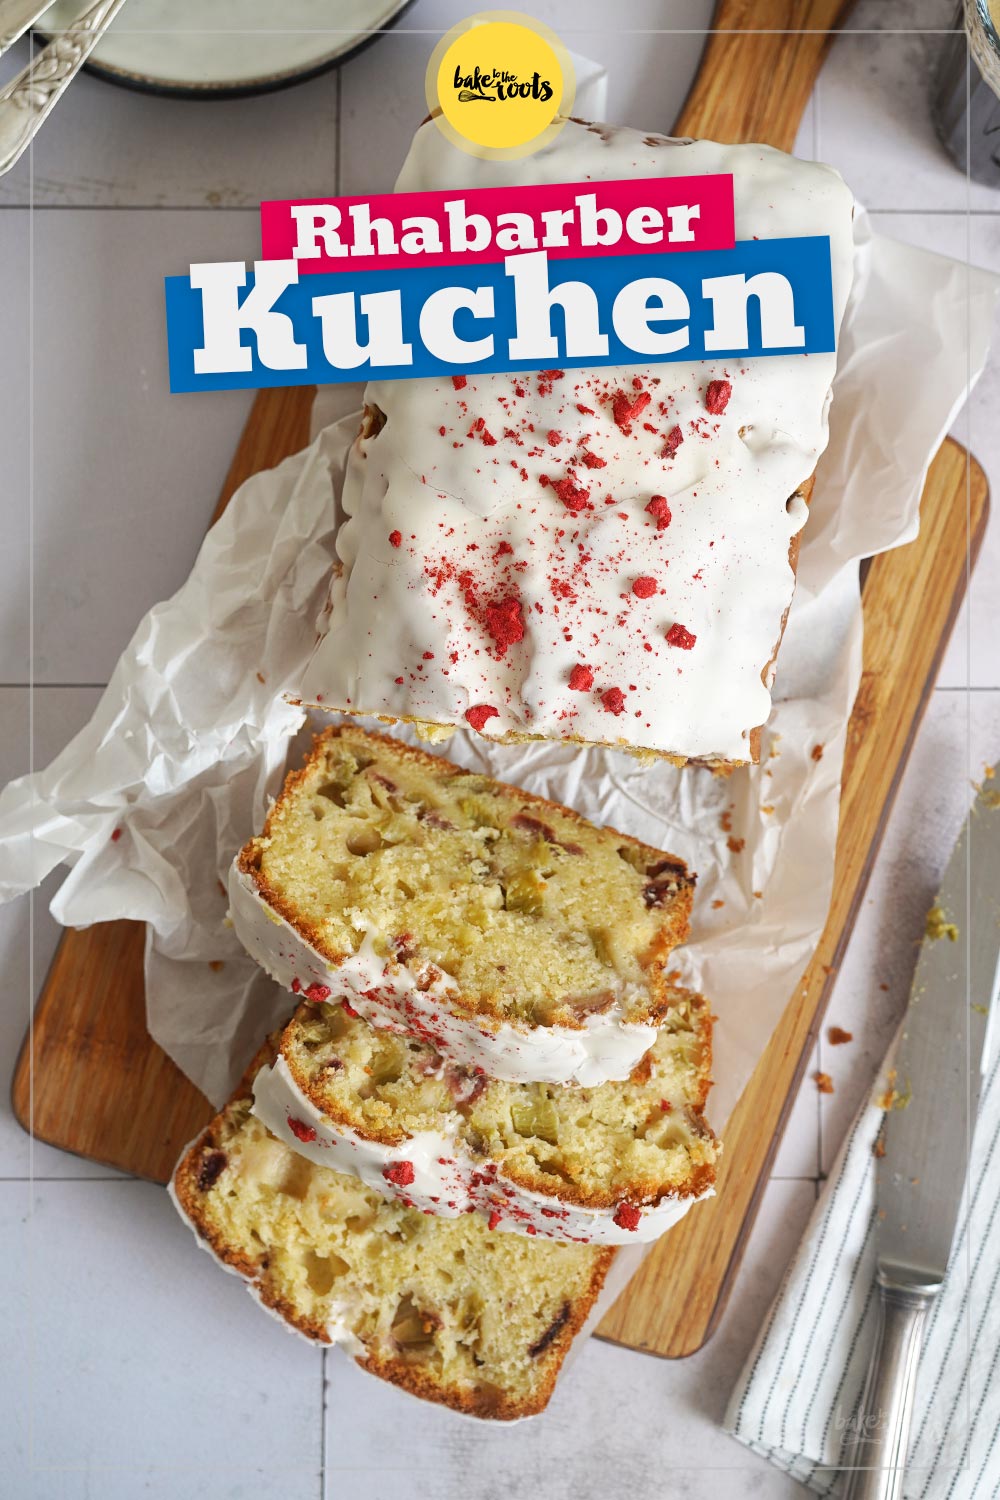 Rhabarber & Erdbeeren Kastenkuchen | Bake to the roots